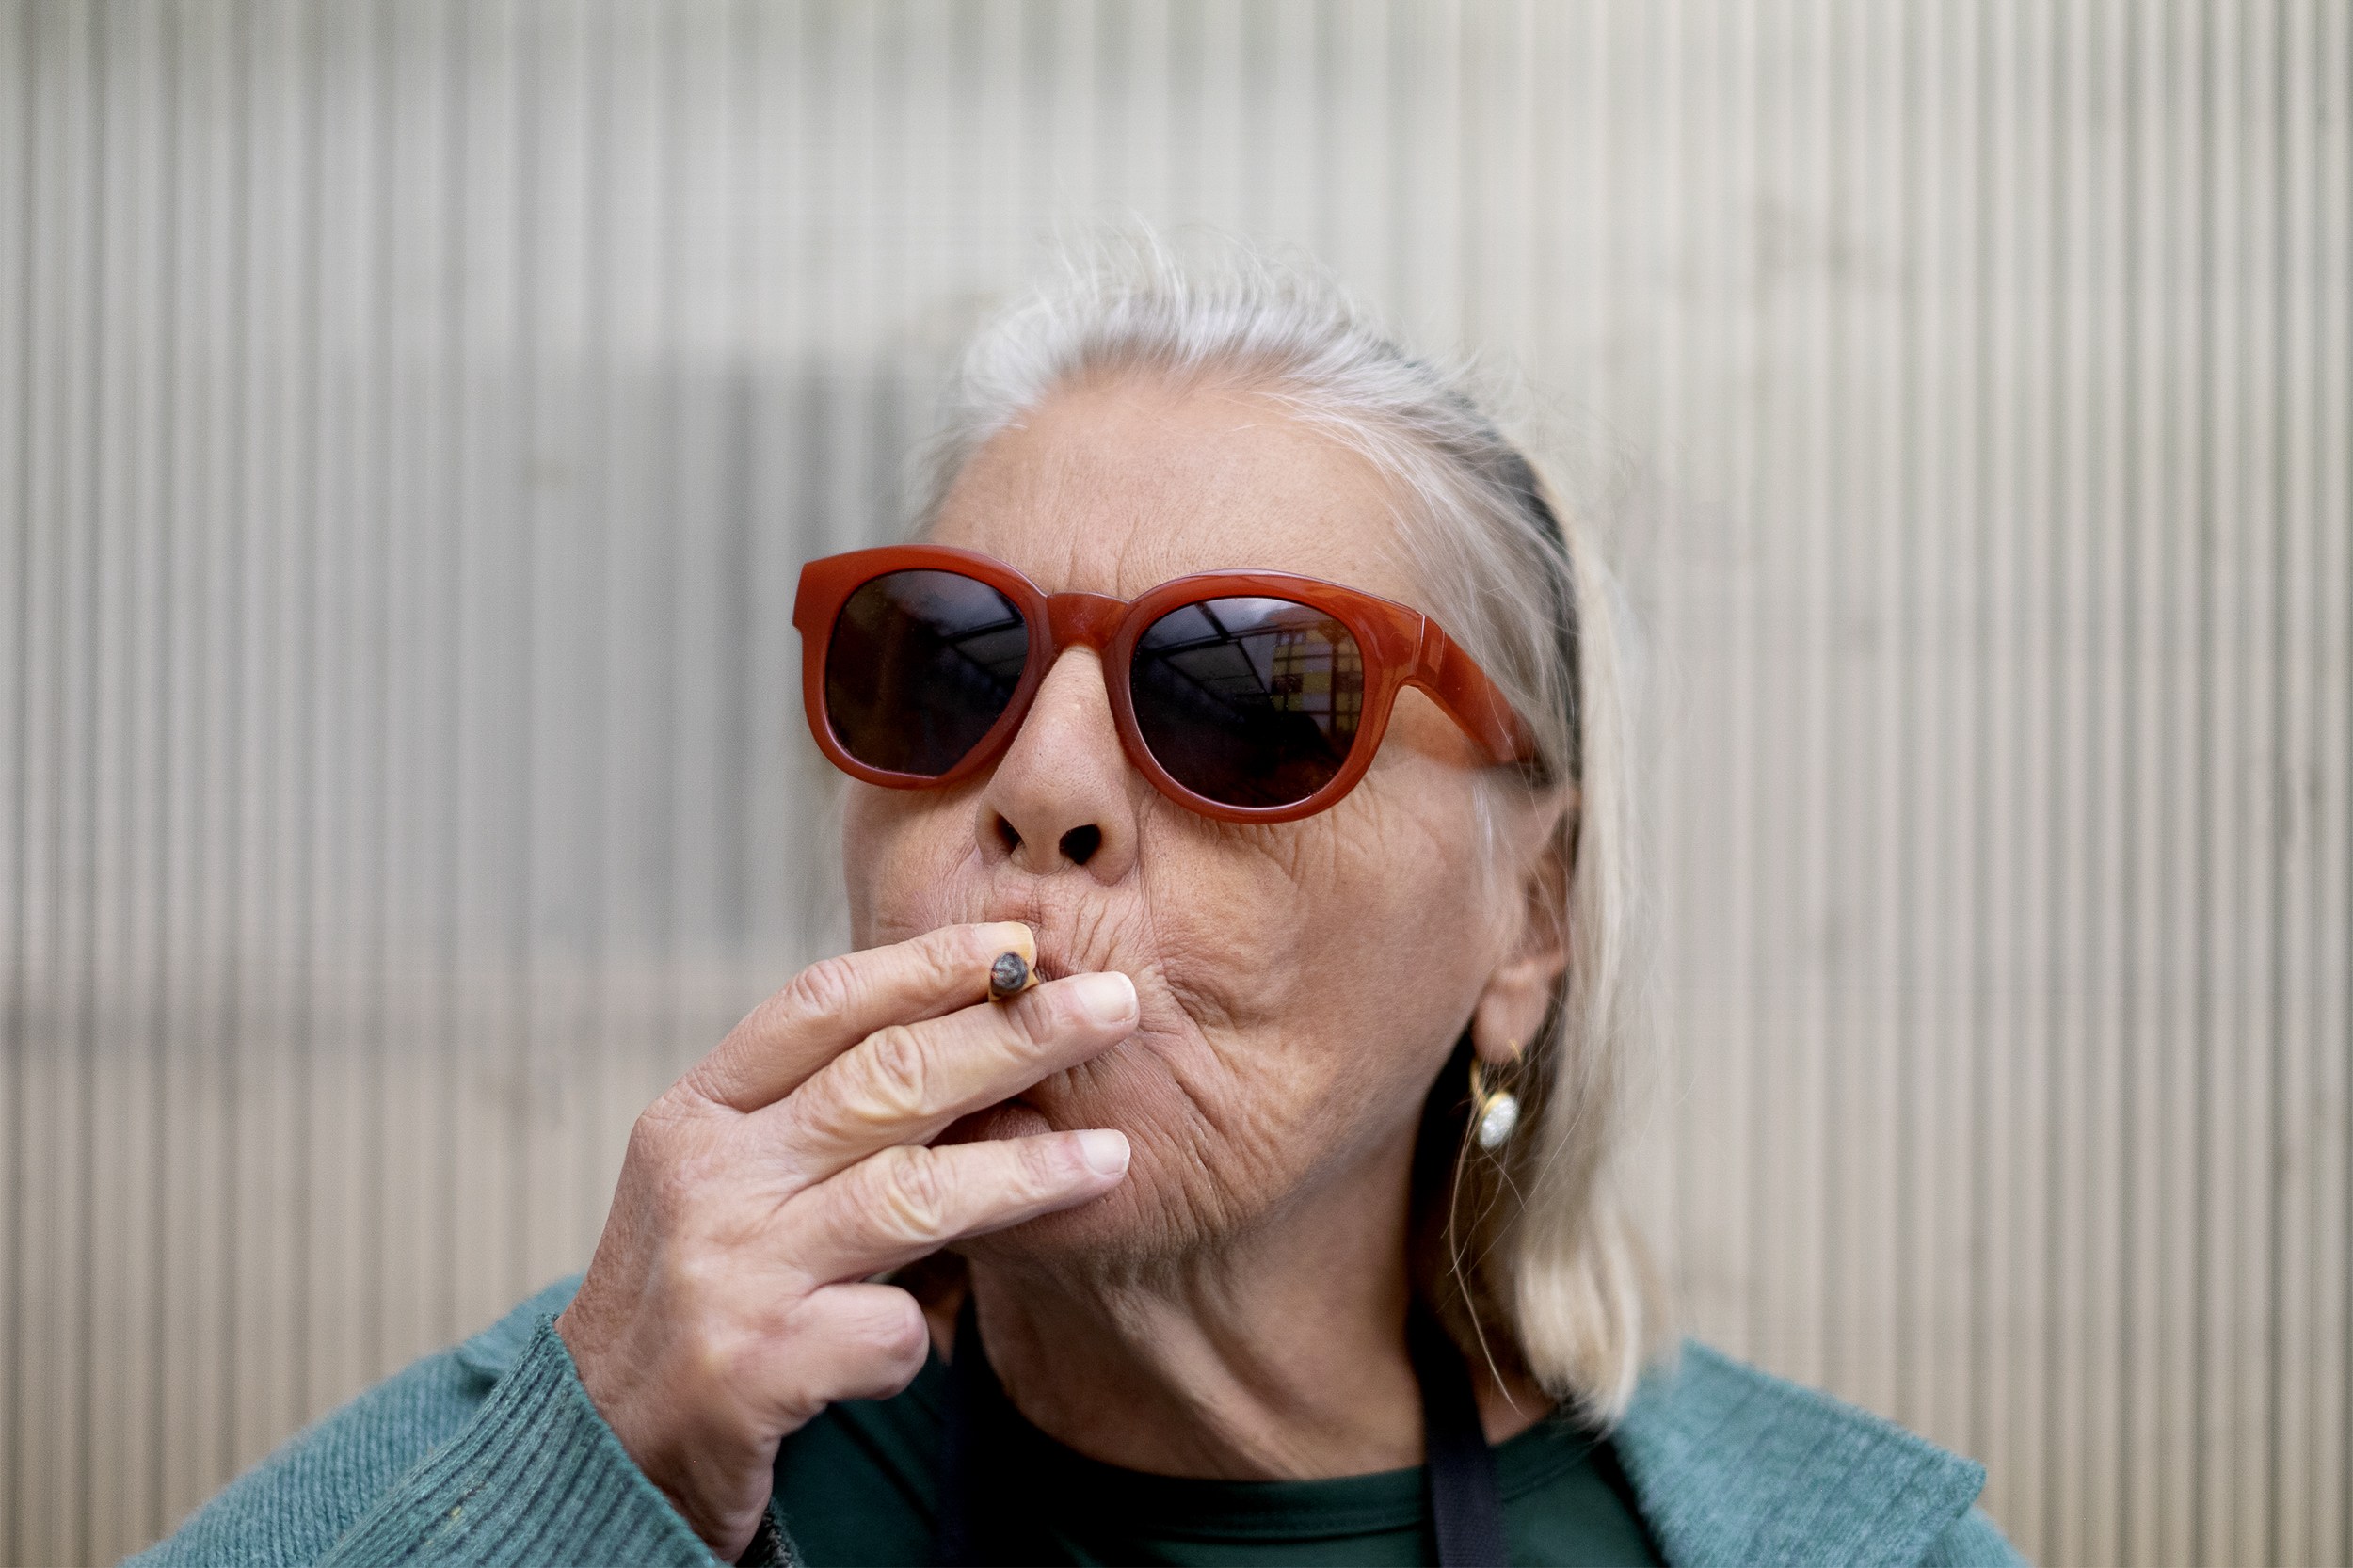 Mulher idosa com óculos escuros de armação vermelha fuma cigarro com a mão direita.